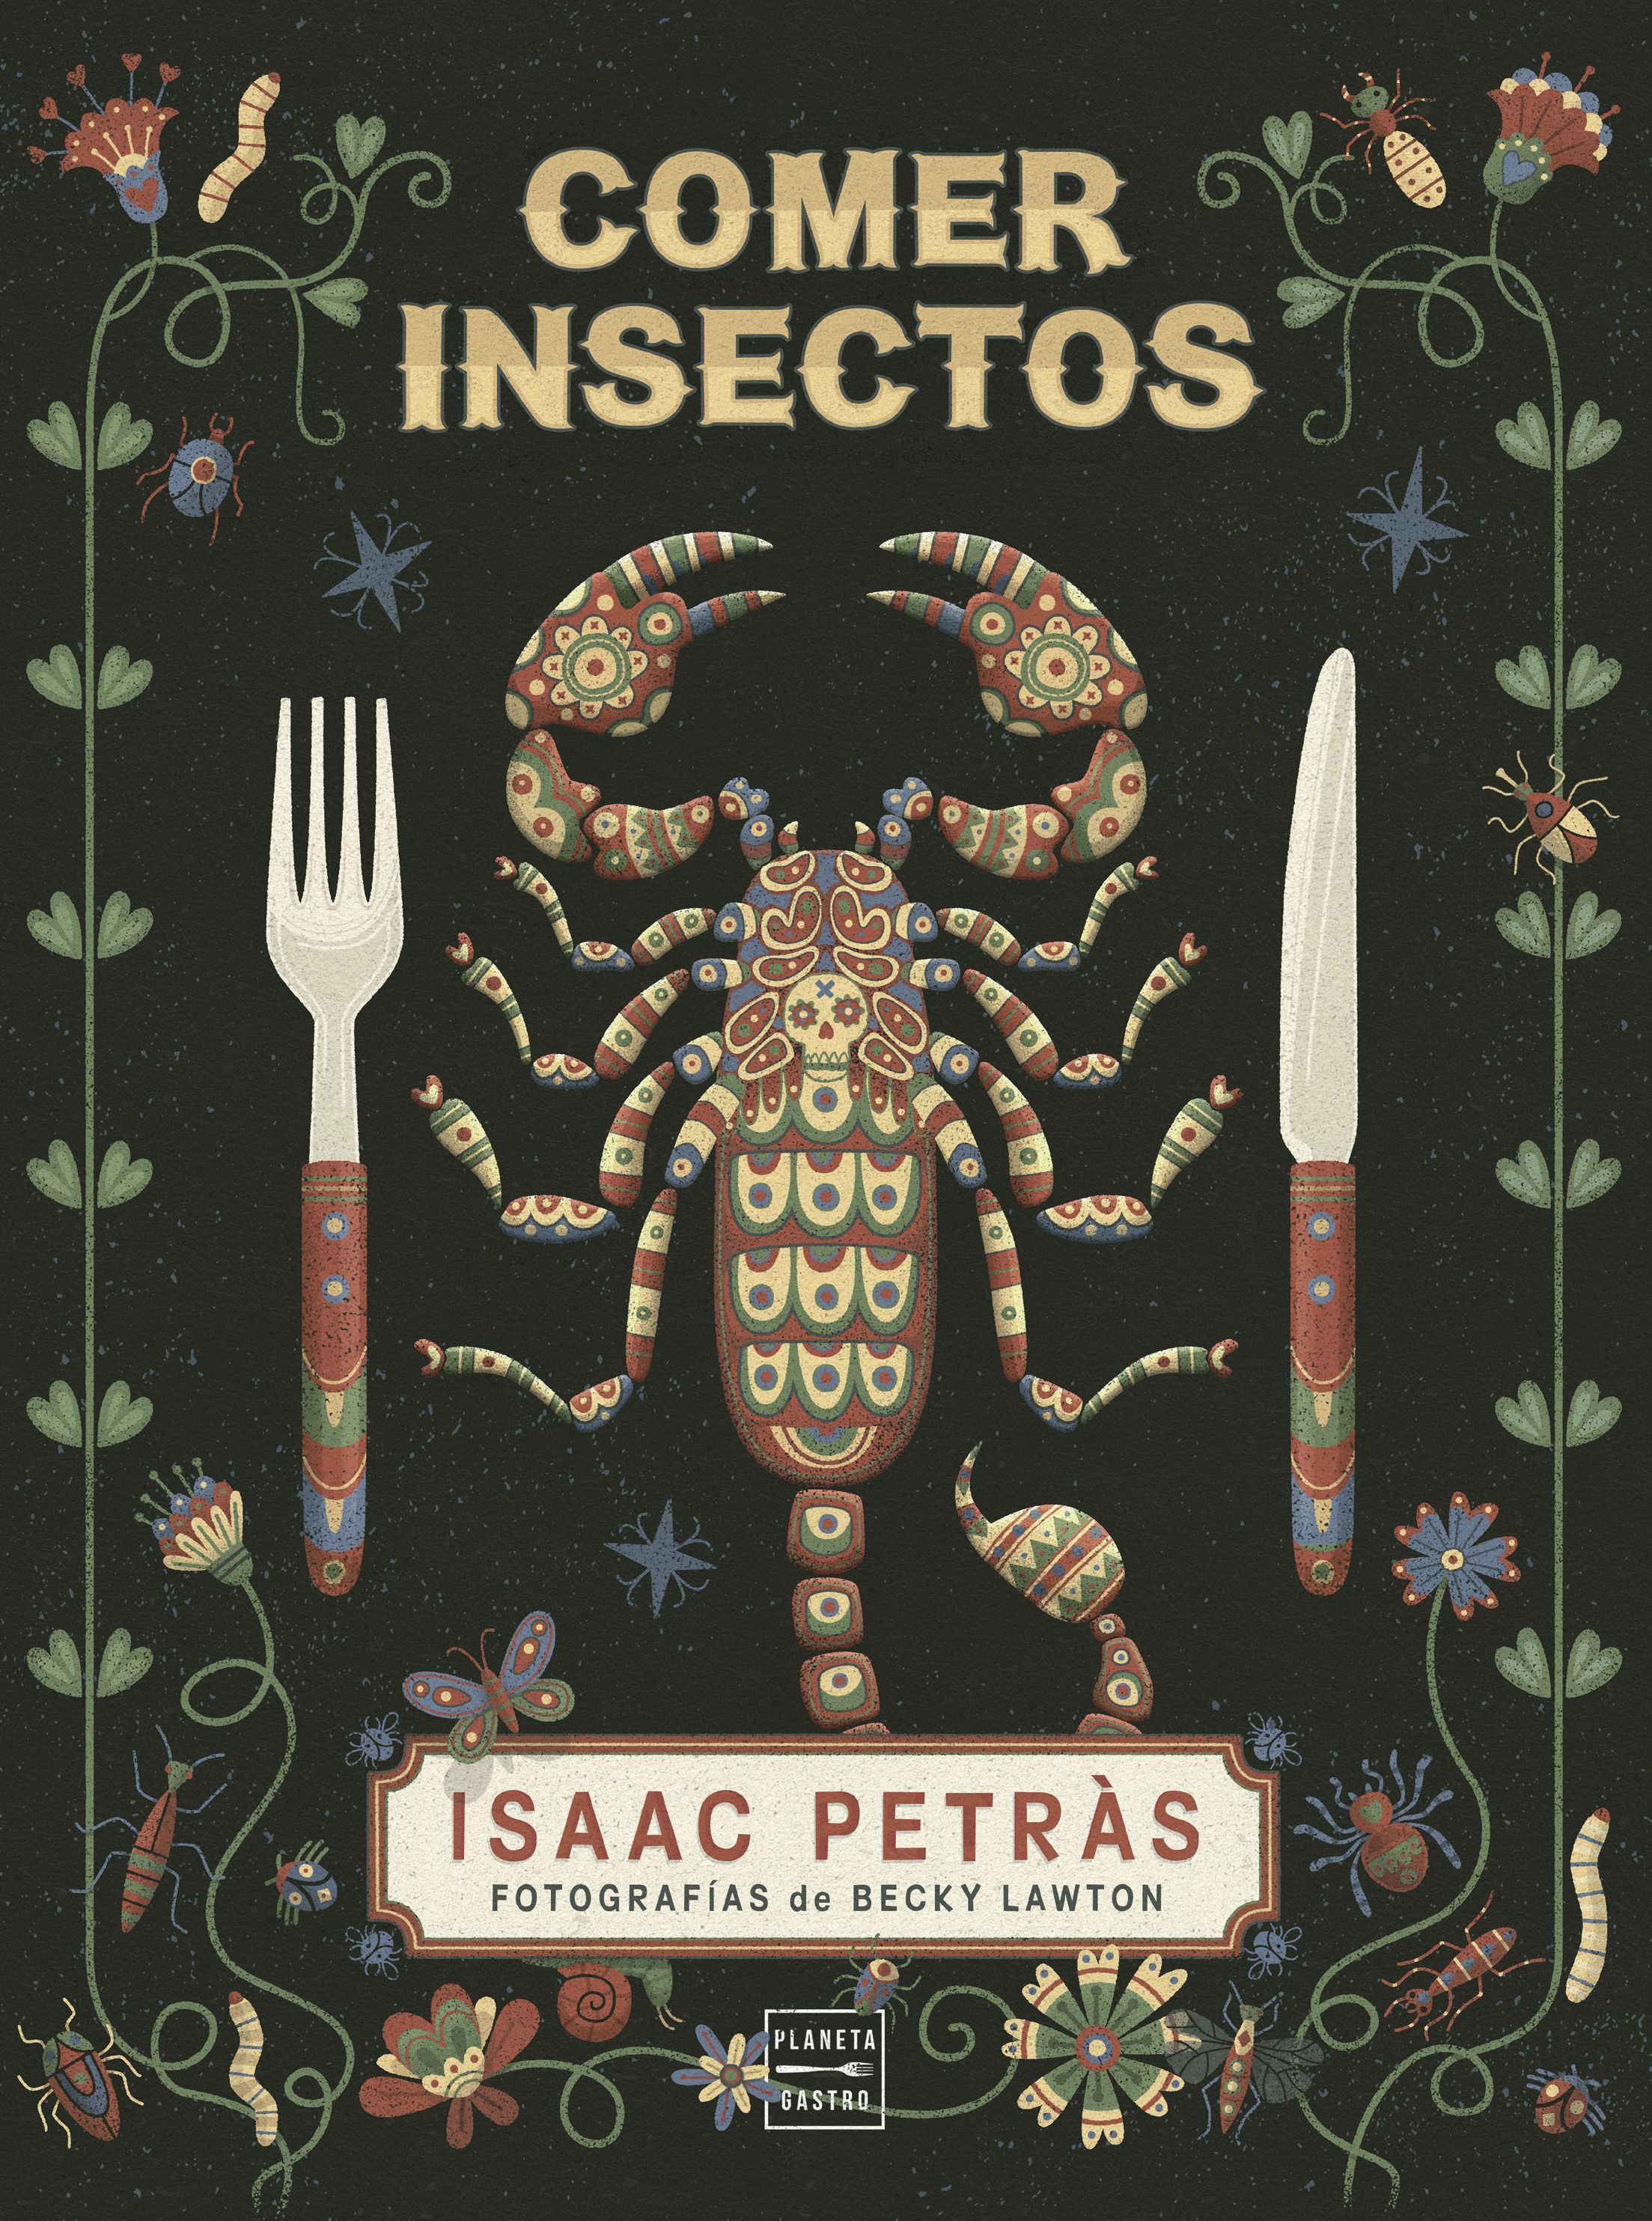 Nutritivos, baratos y fáciles de criar, así son los insectos los incluirías en tu dieta (Ed. Planeta Gastro)